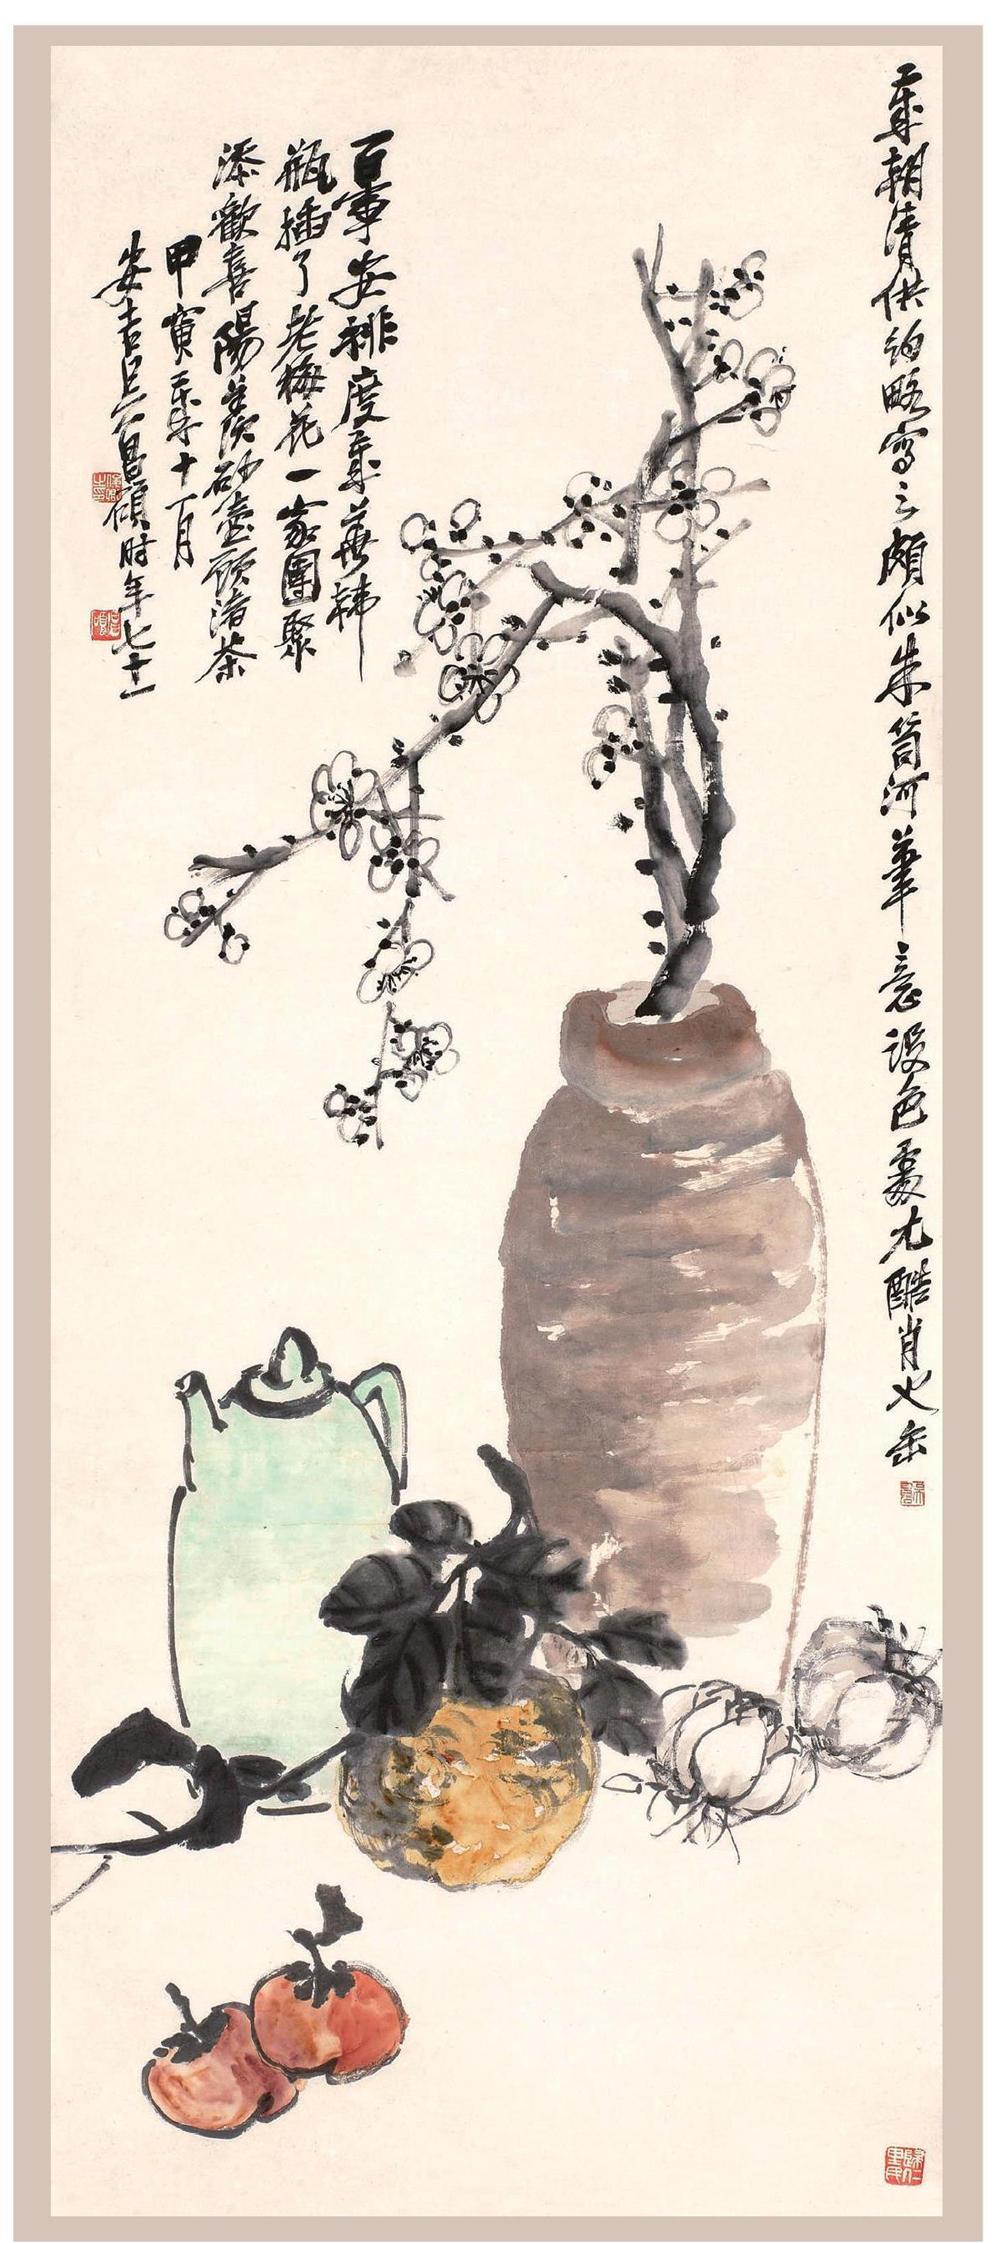 本文介绍的是画家笔下的茶壶画,它们或神似,或型似,源于生活而高于